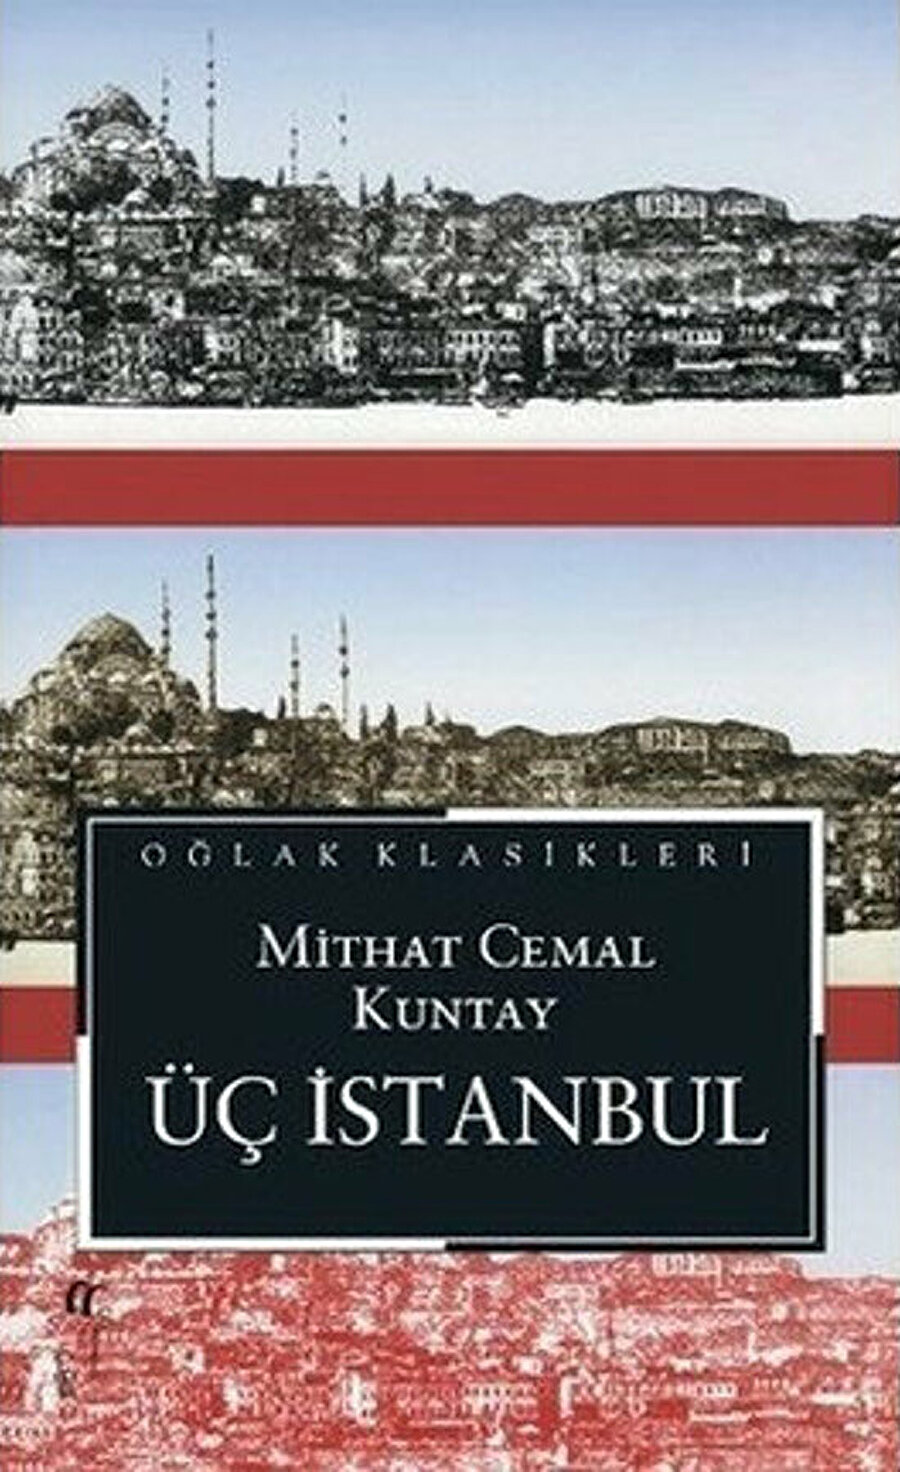 Kuntay'ın üç devri anlattığı ve 1983’te TRT tarafından filme de çekilen Üç İstanbul romanı.